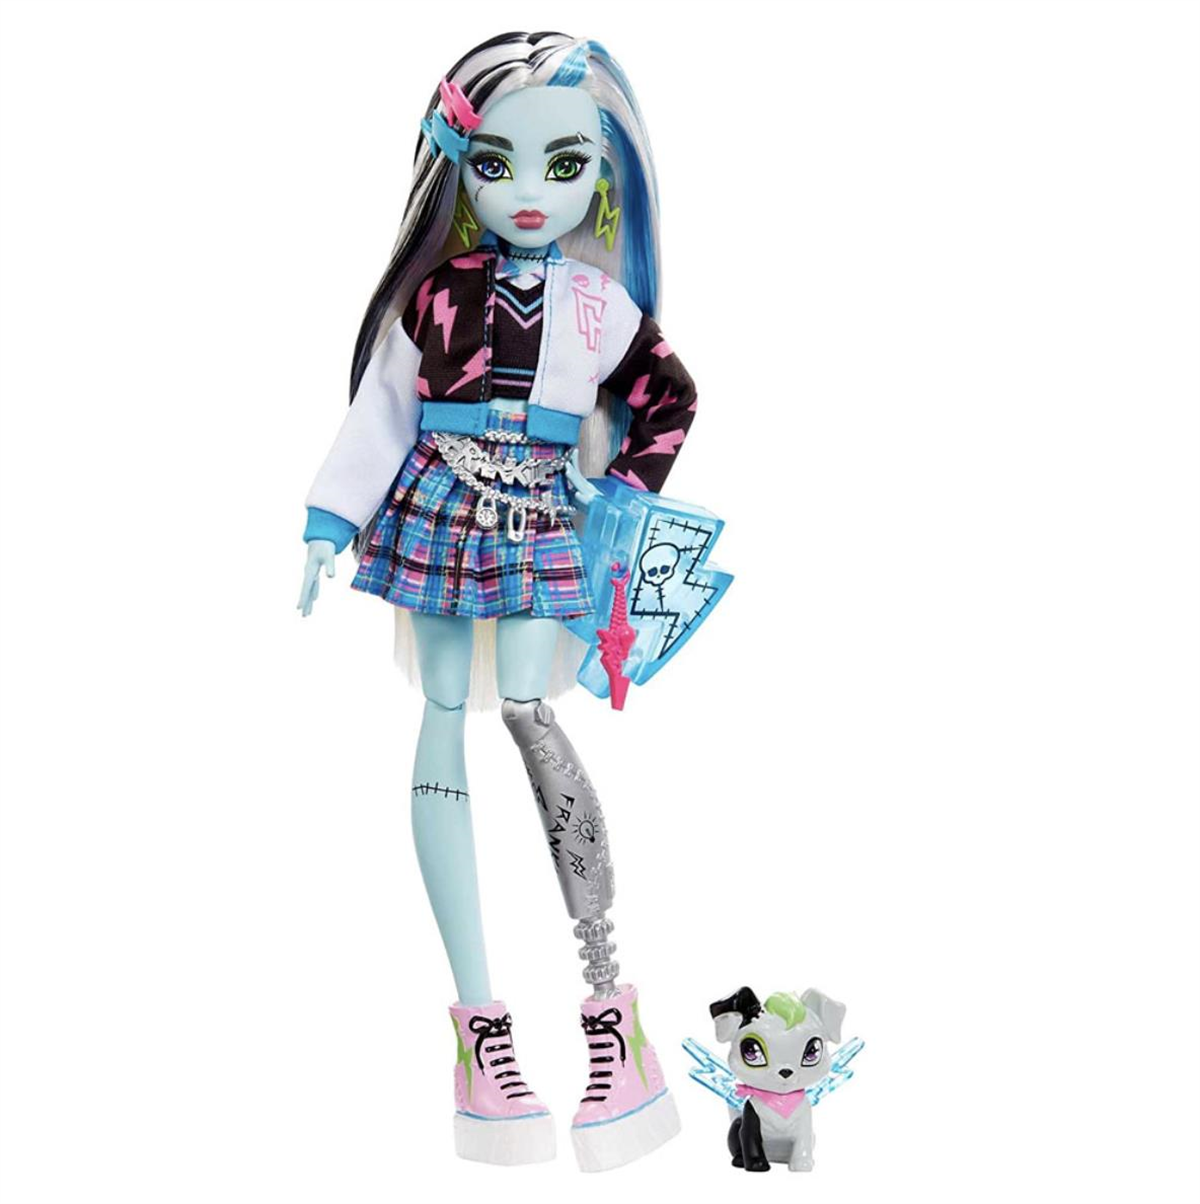 Monster High Ana Karakter Bebekler Frankie Stein HPD53-HHK53 - Toysall